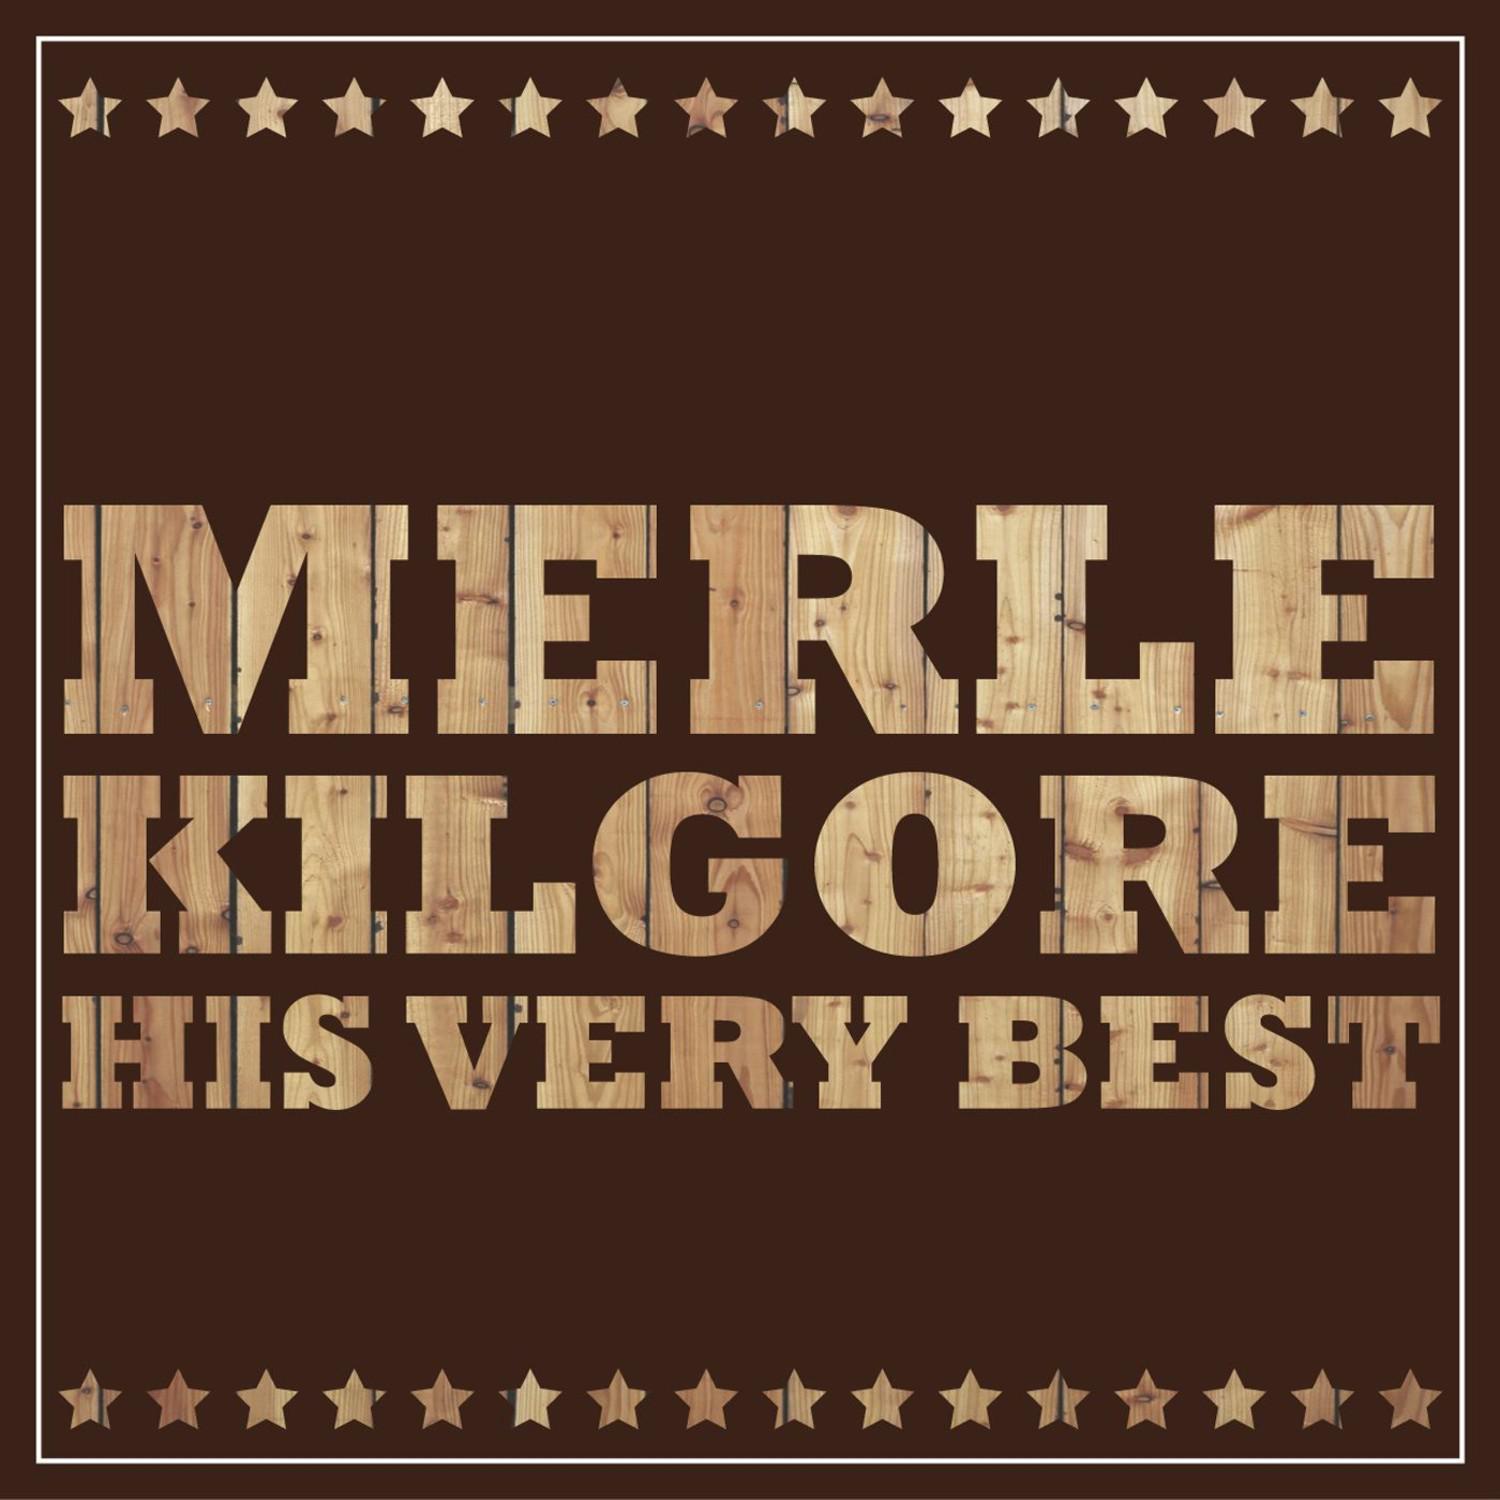 Merle Kilgore - His Very Best